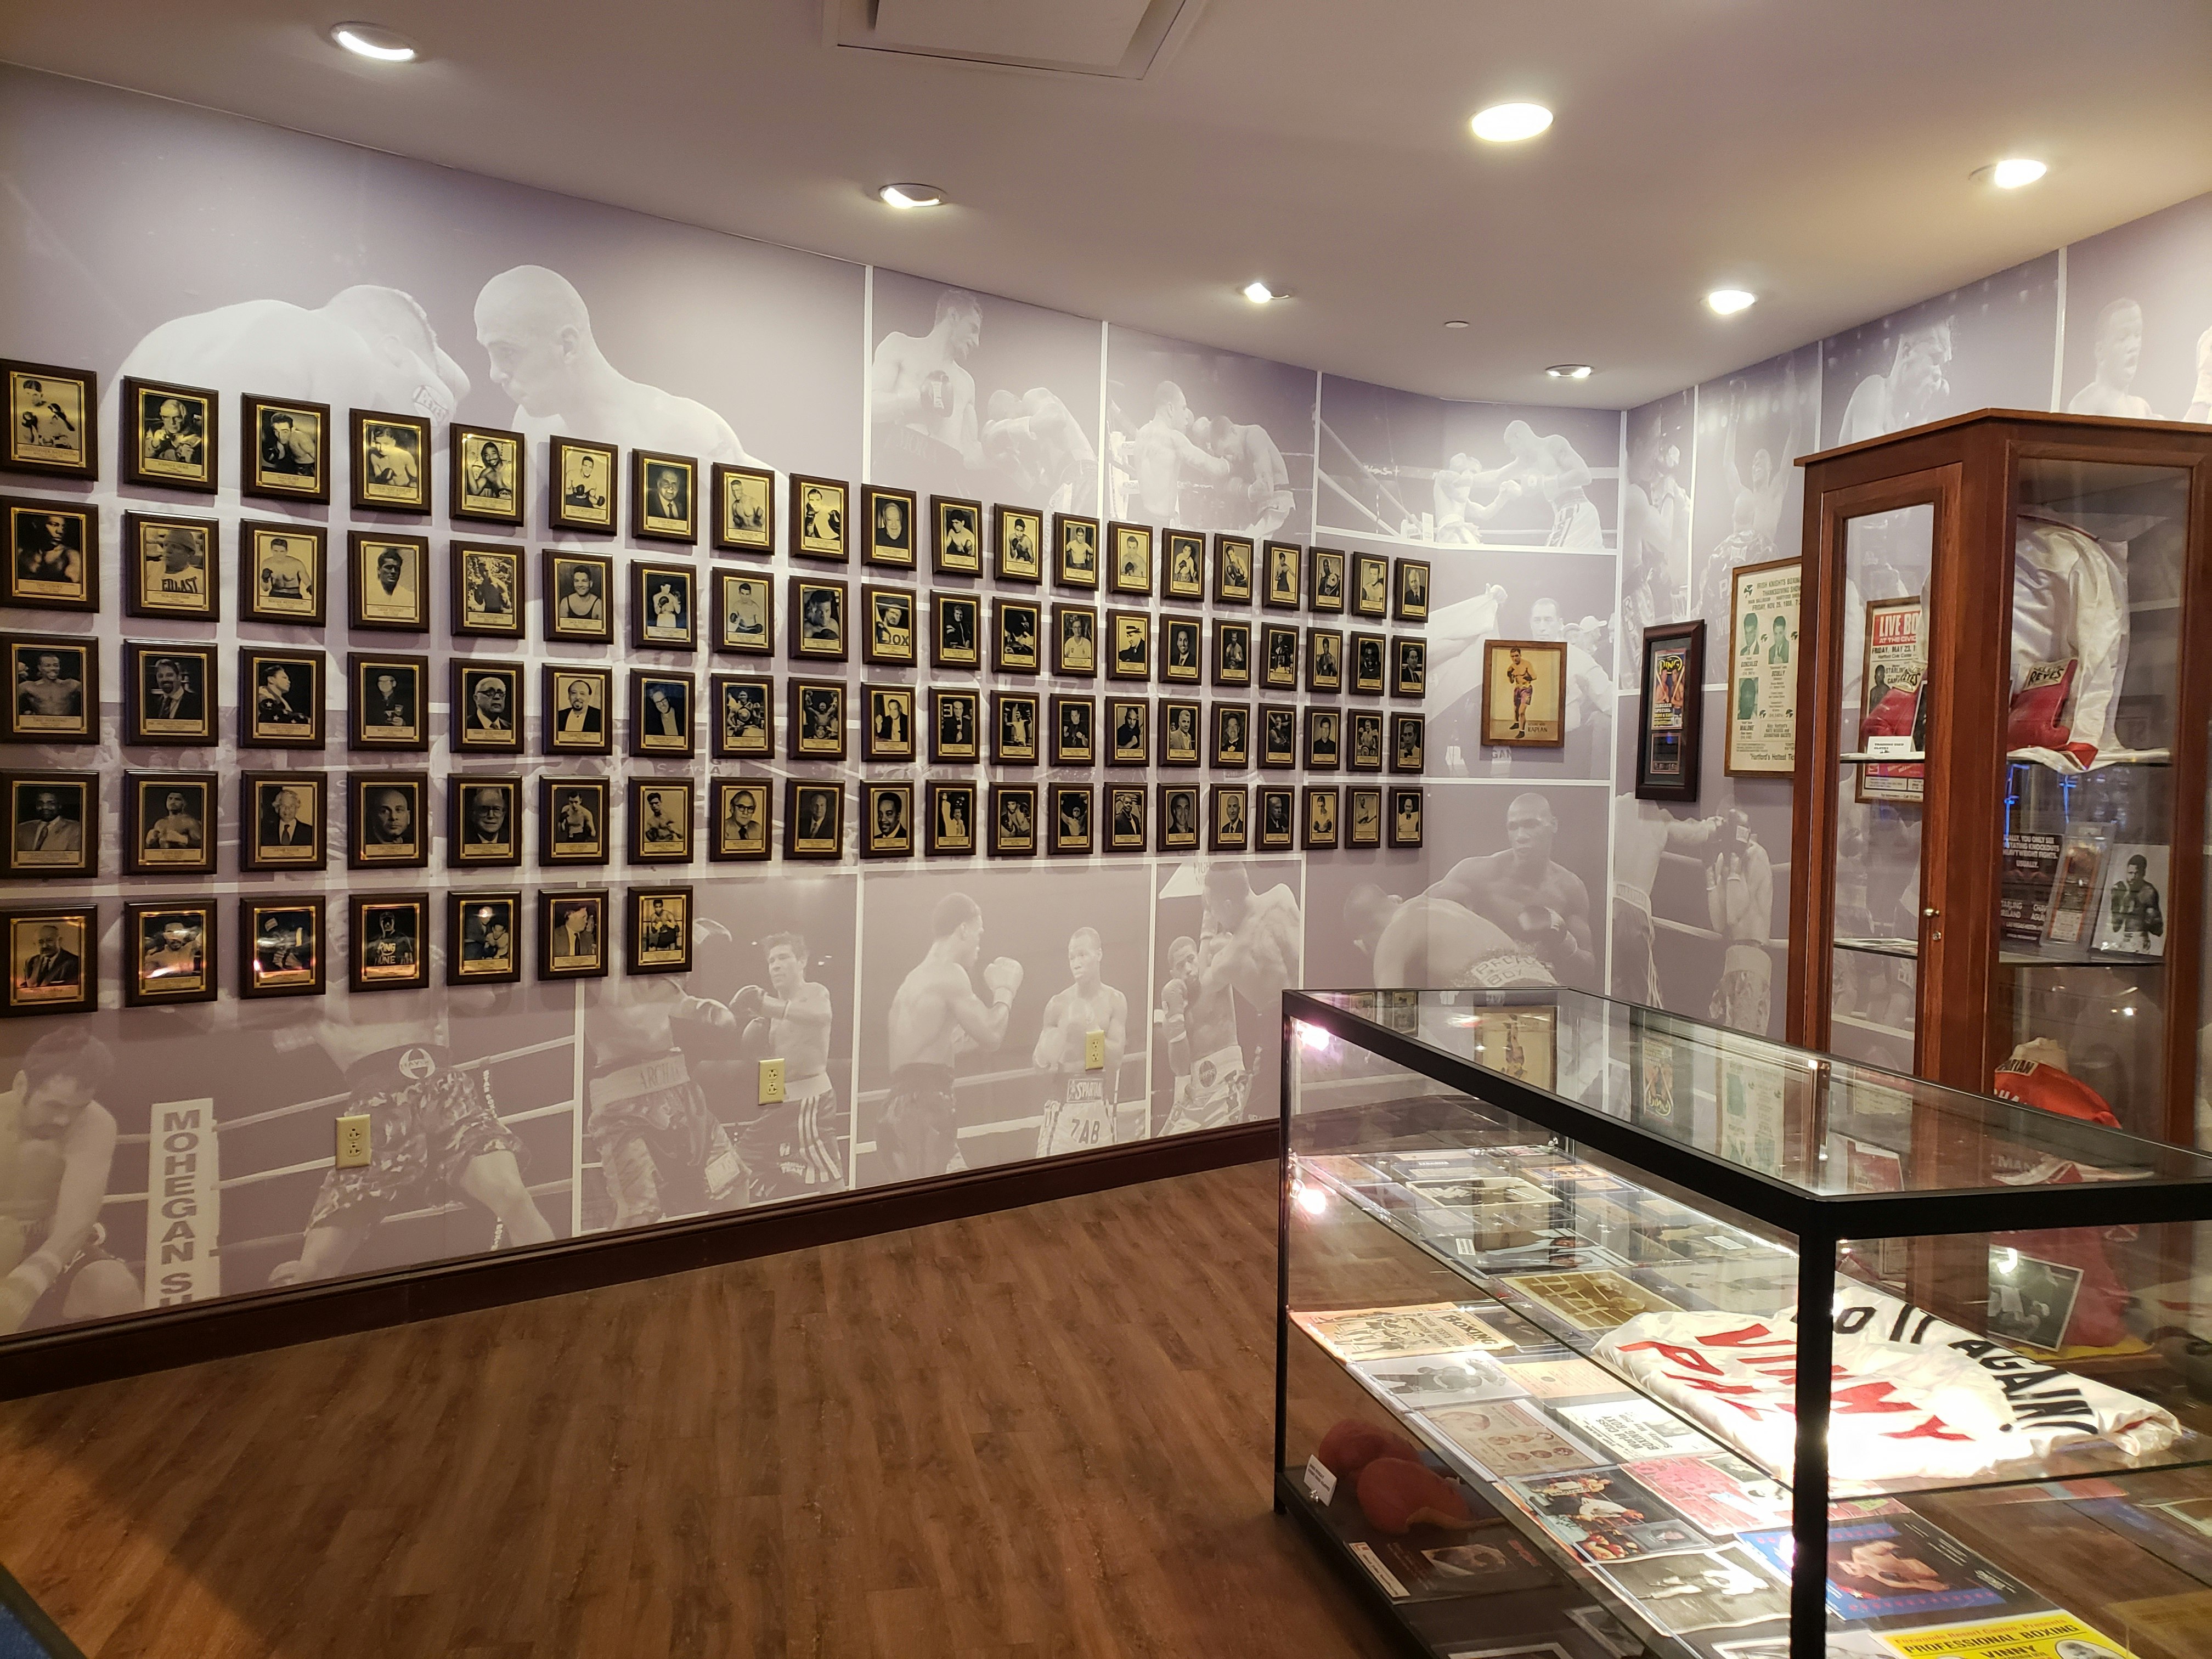 En böjd vägg i Connecticut Boxing Hall of Fame är upptagen med träplattor, på vilka fotografiska porträtt i sepia ton av stora boxningsmästare är monterade.  Till höger finns två glasmontrar fulla av minnessaker. 